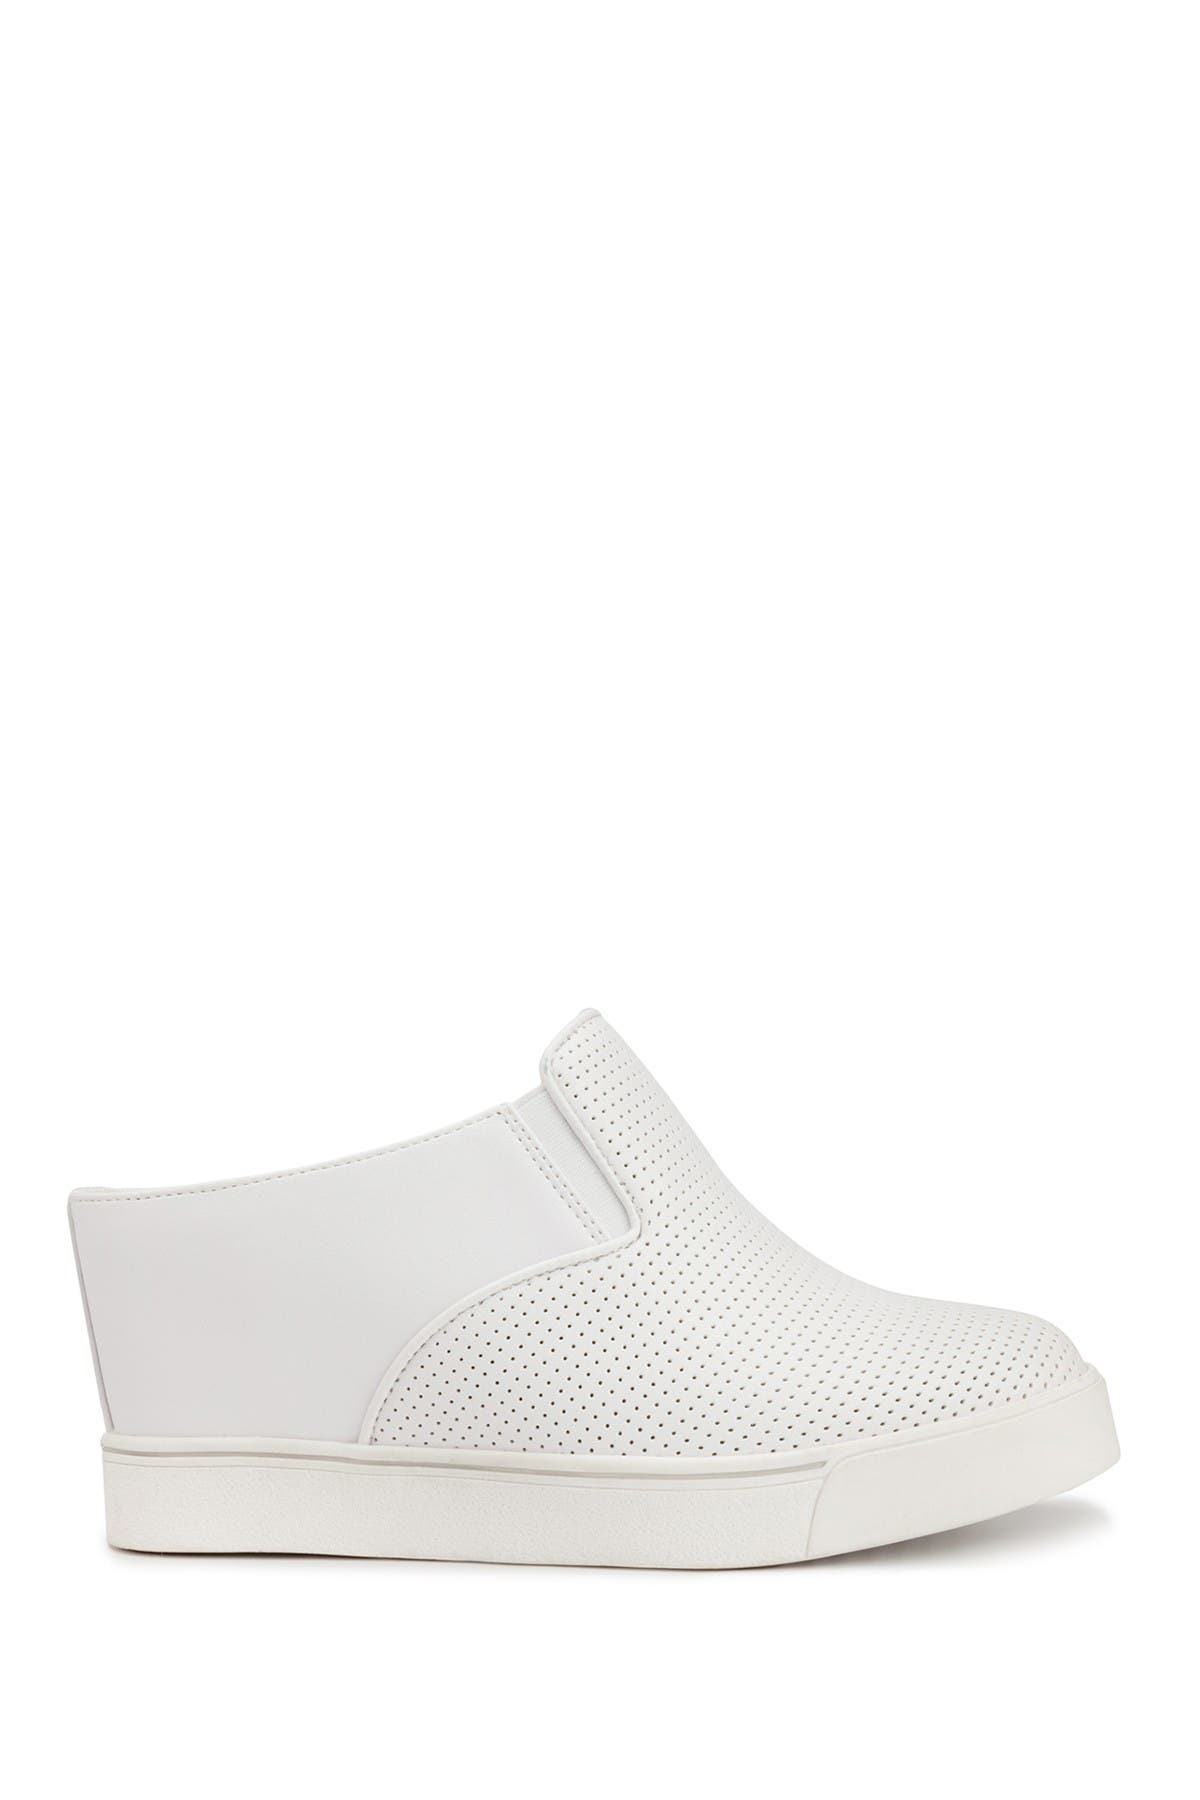 Sugar Kallie Slip On Flatform Sneaker In White